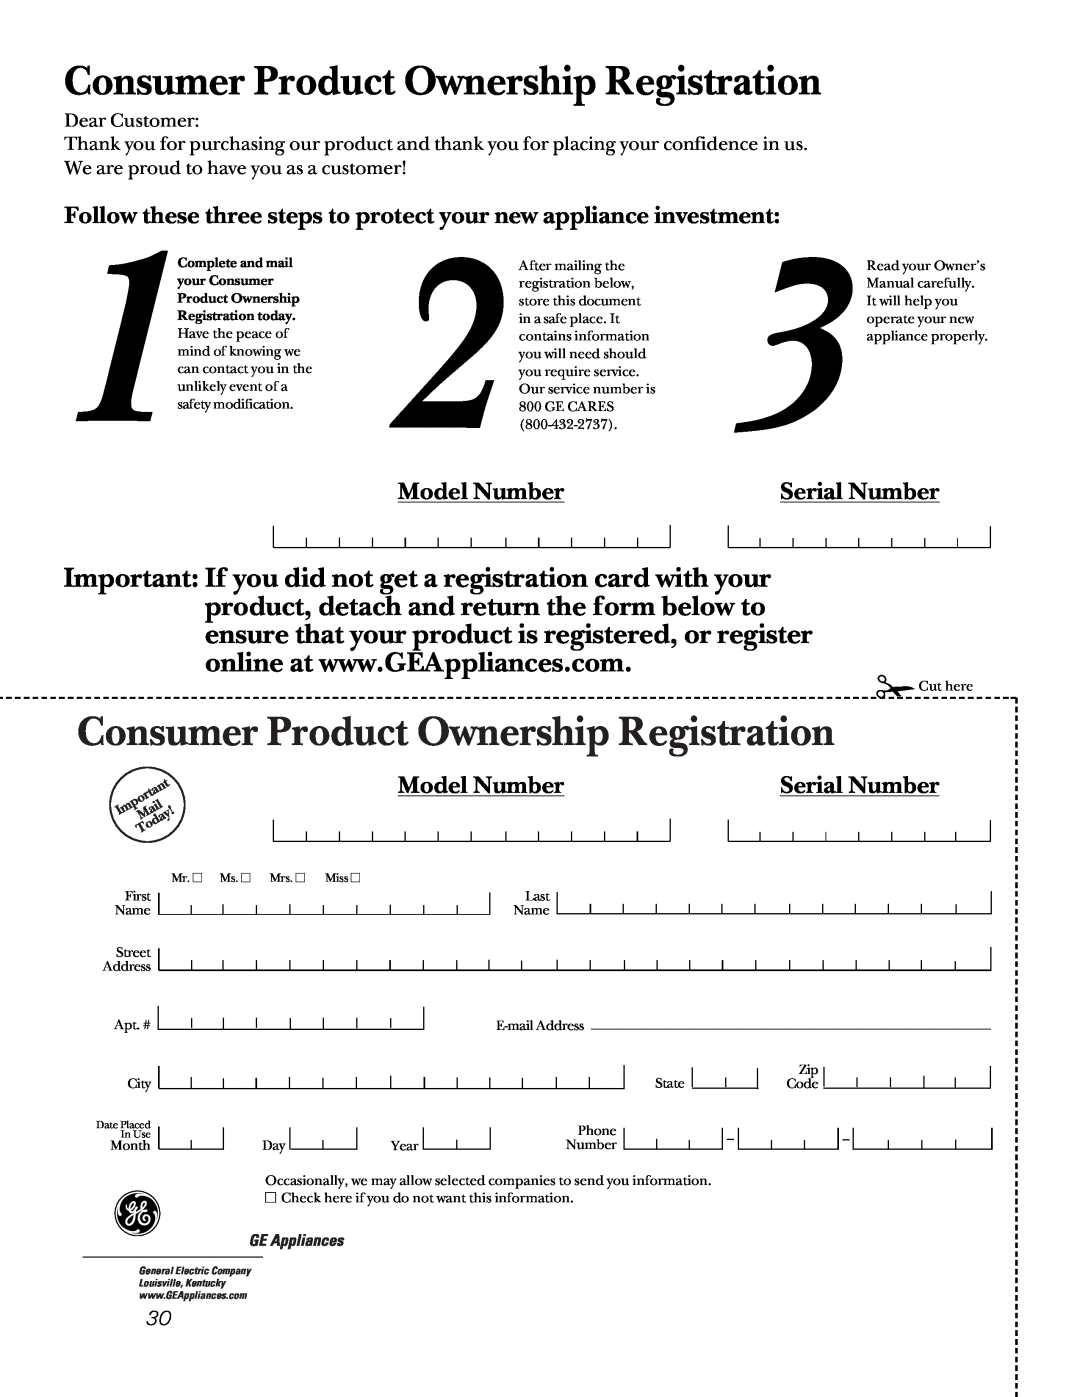 GE JBP65, JBP66, JBP78, JBP64, EER2000, JBP70, EER3000 Model Number, Serial Number, Consumer Product Ownership Registration 